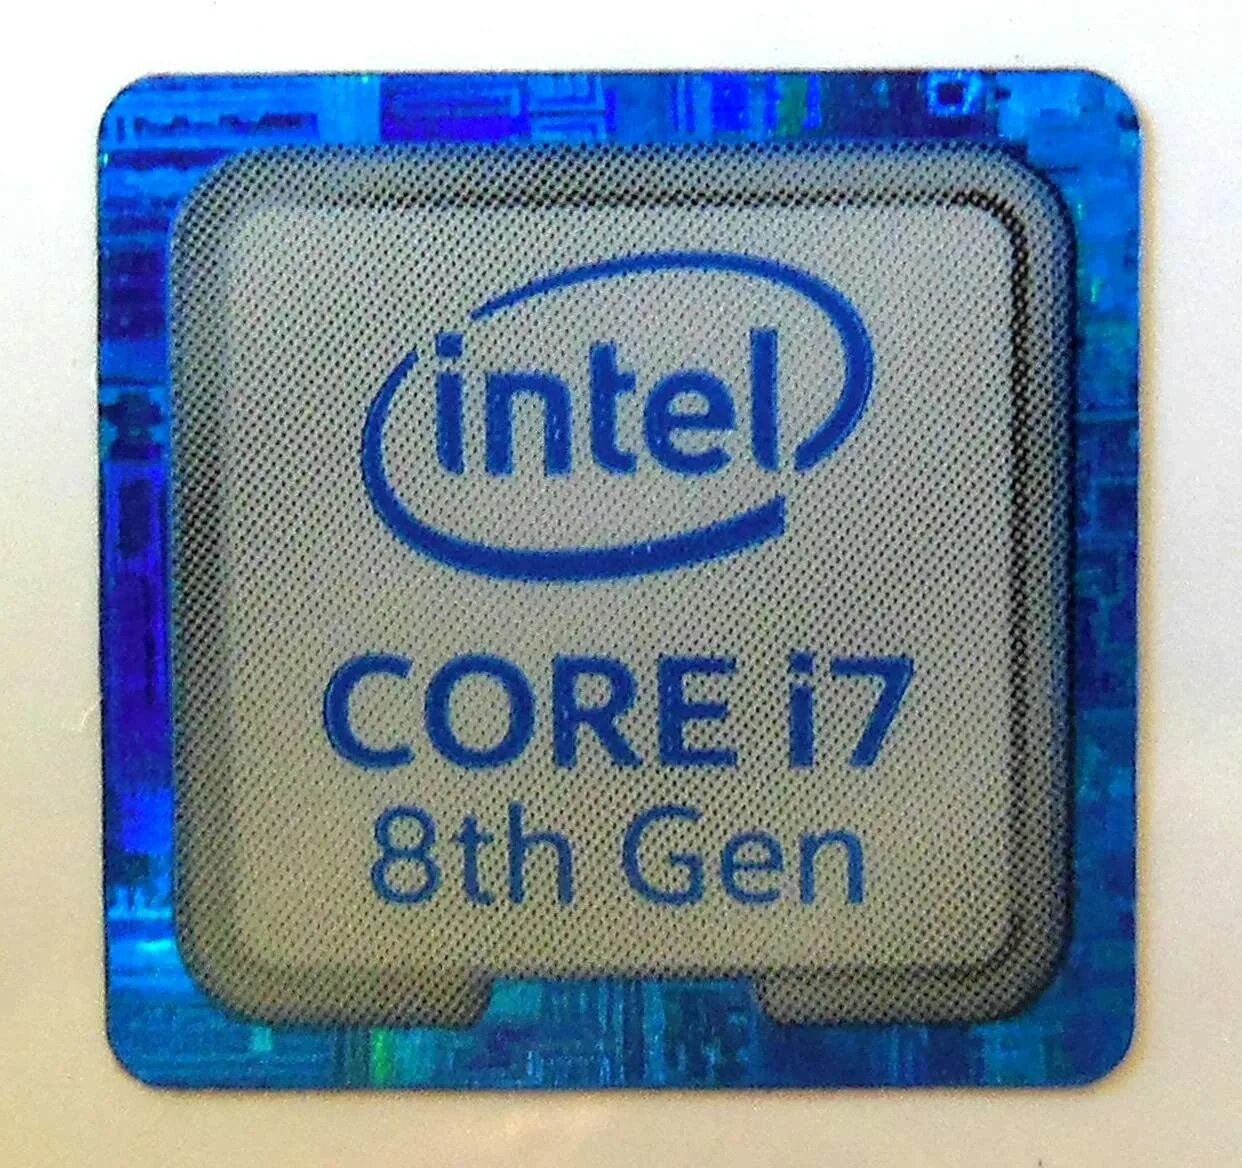 Core i8. Intel Core i5 gen5. Intel Core i5 8 Gen. Intel Core 3th Gen. Процессор Intel Core i5 Gen 8.